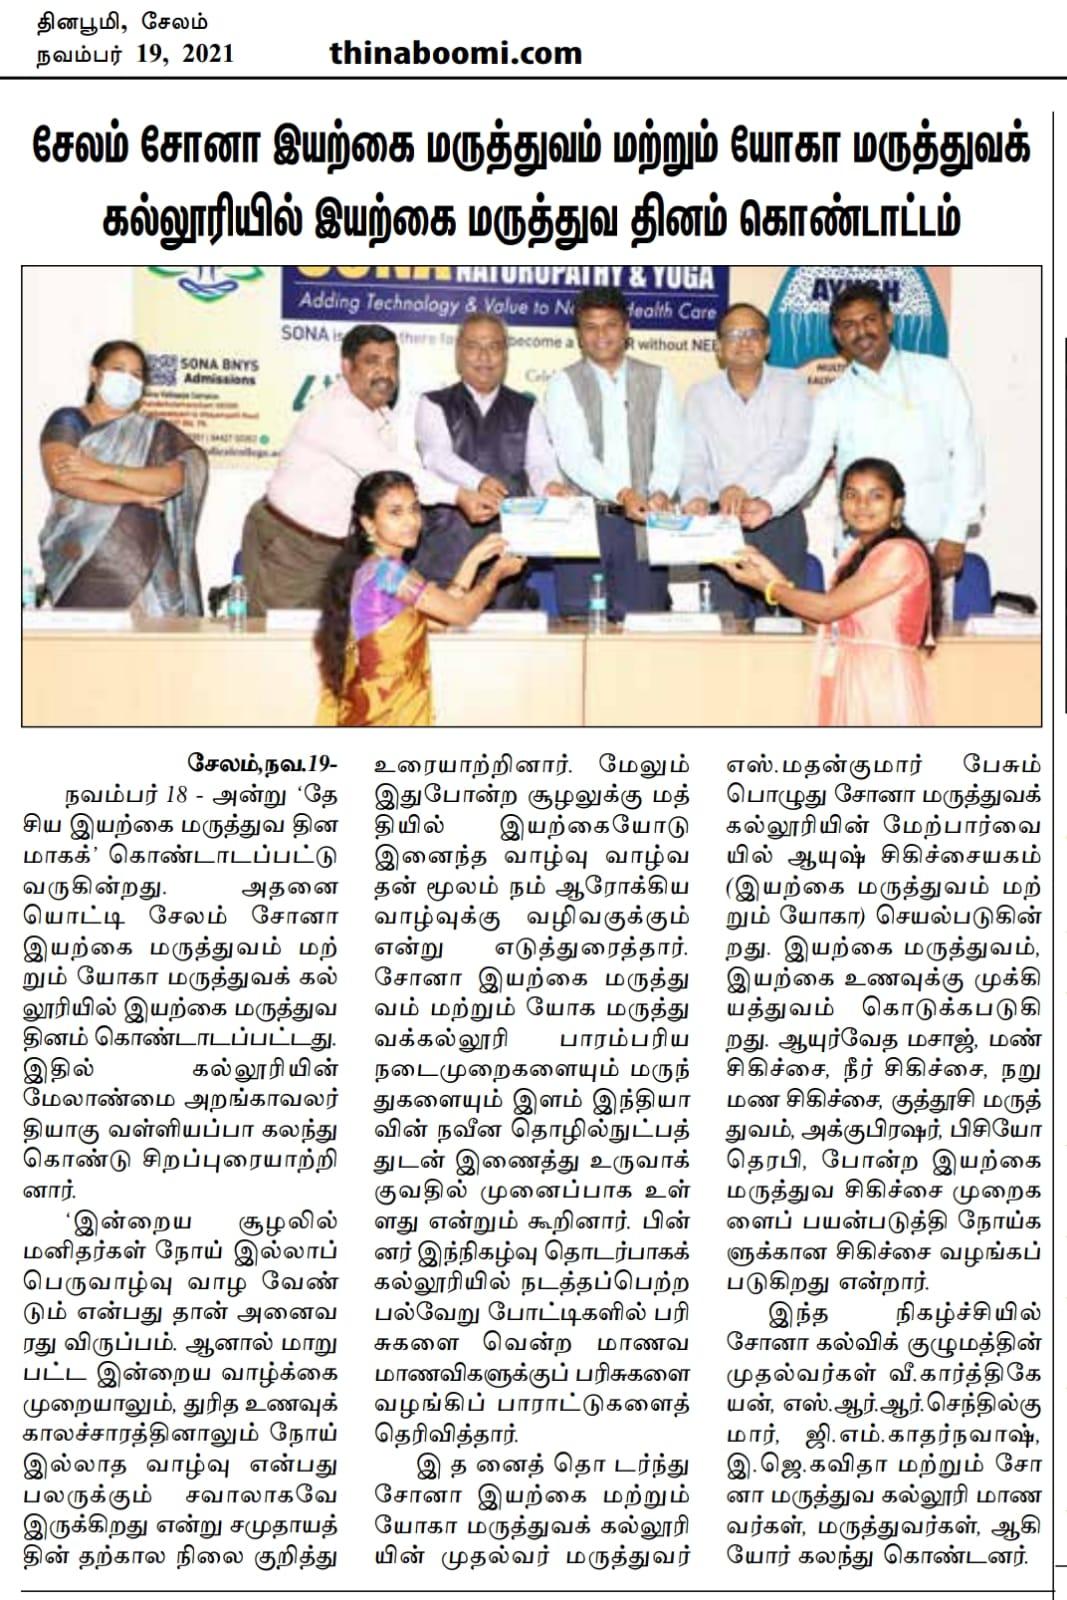 naturopathy day 2021 celebrations at Tamilnadu